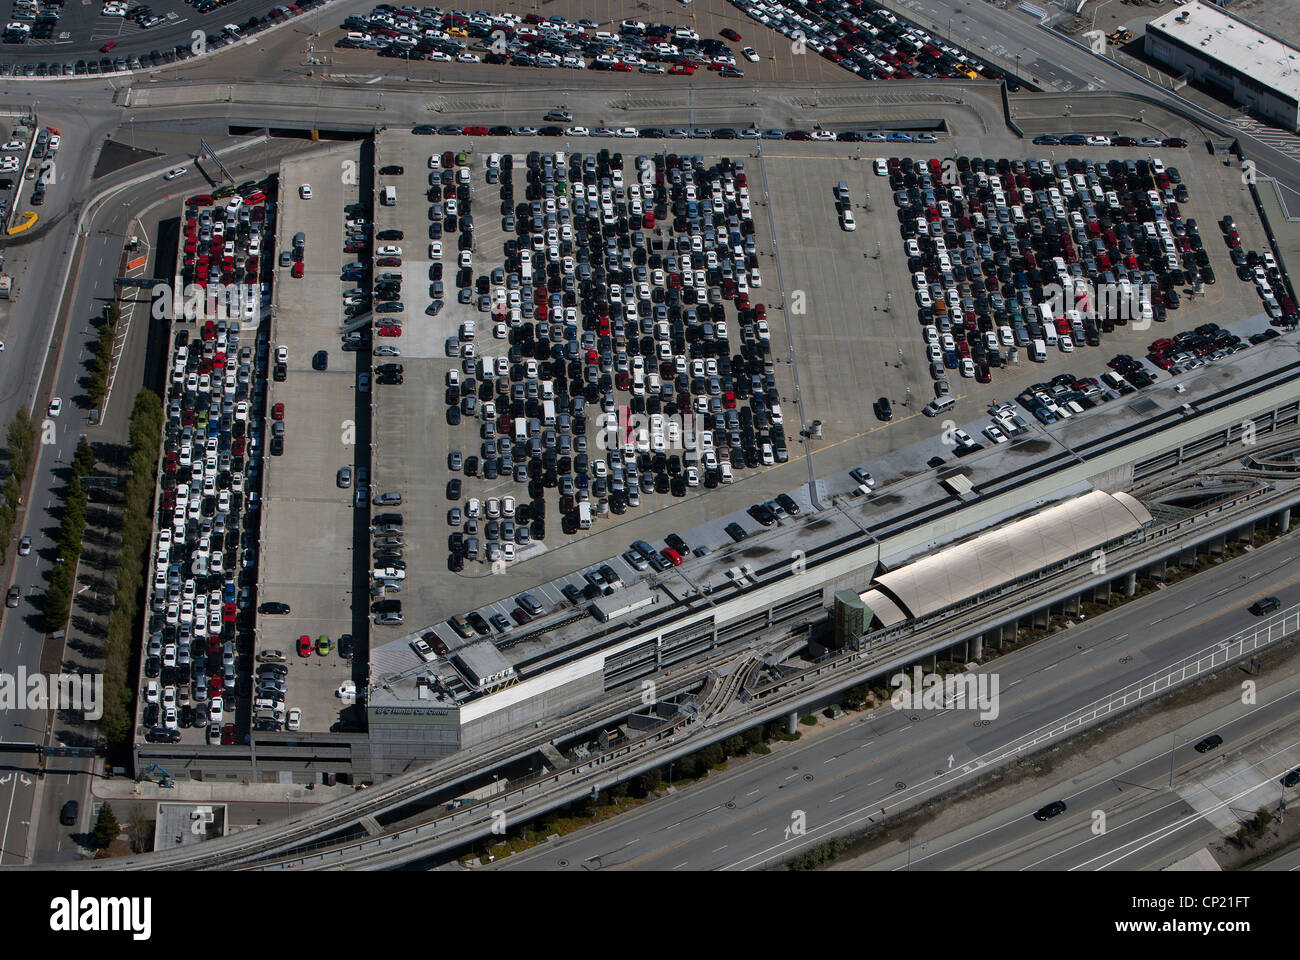 Photographie aérienne l'aéroport International de San Francisco SFO centre de location de voiture Banque D'Images